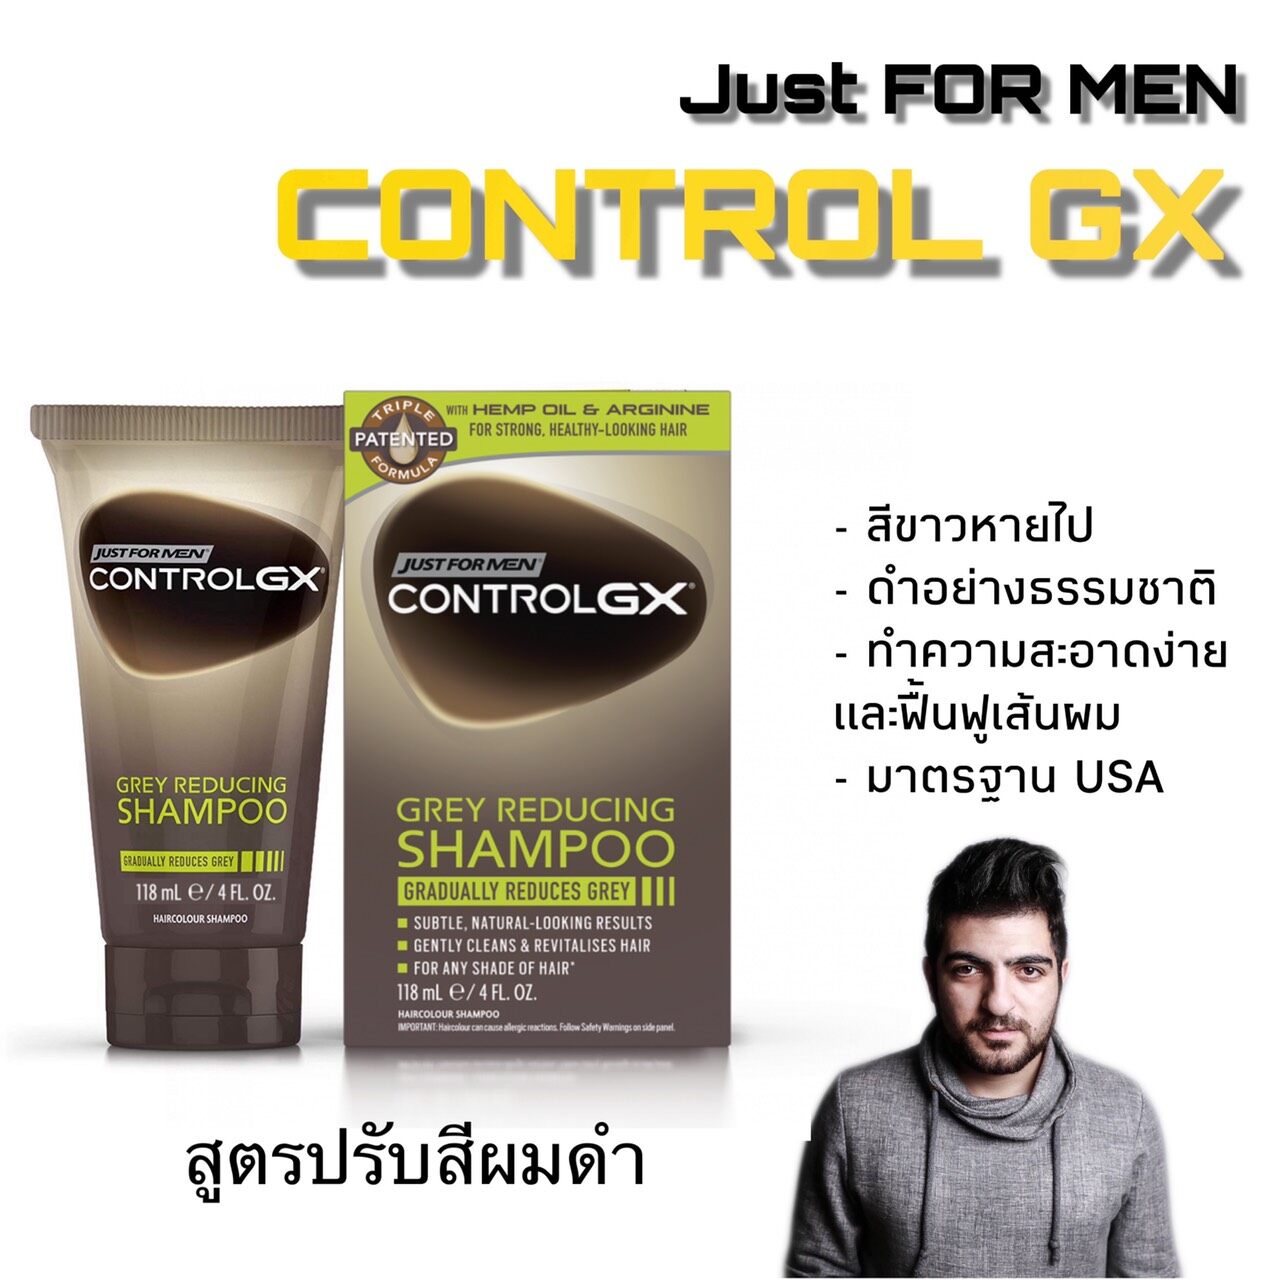 แชมพูปิดผมขาว แชมพูย้อมผมดำ Just For Men Control GX Gray Reducing Shampoo 118ml